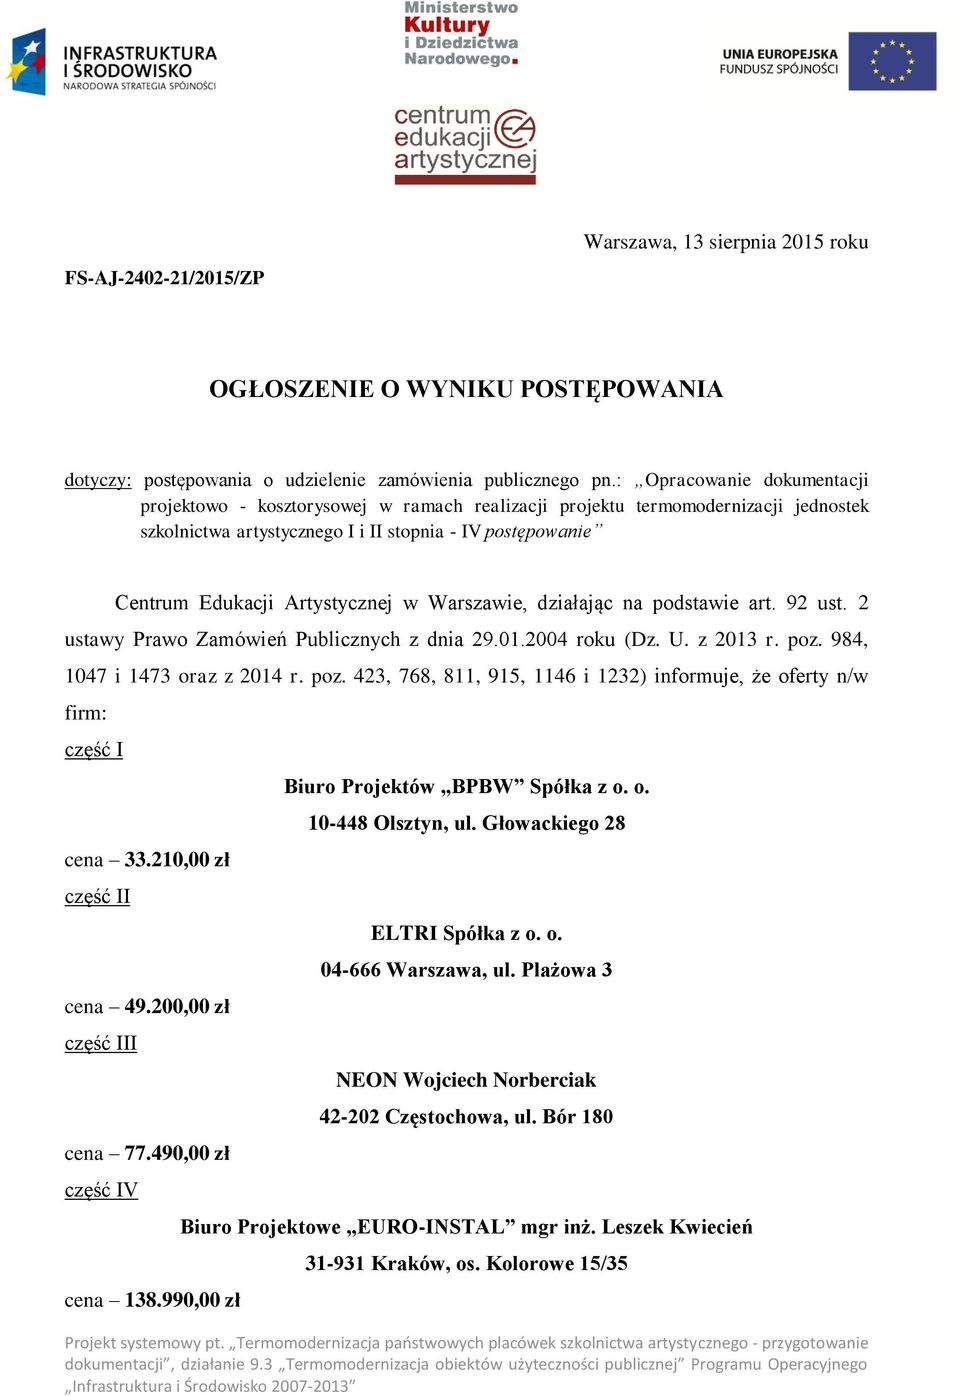 w Warszawie, działając na podstawie art. 92 ust. 2 ustawy Prawo Zamówień Publicznych z dnia 29.01.2004 roku (Dz. U. z 2013 r. poz.